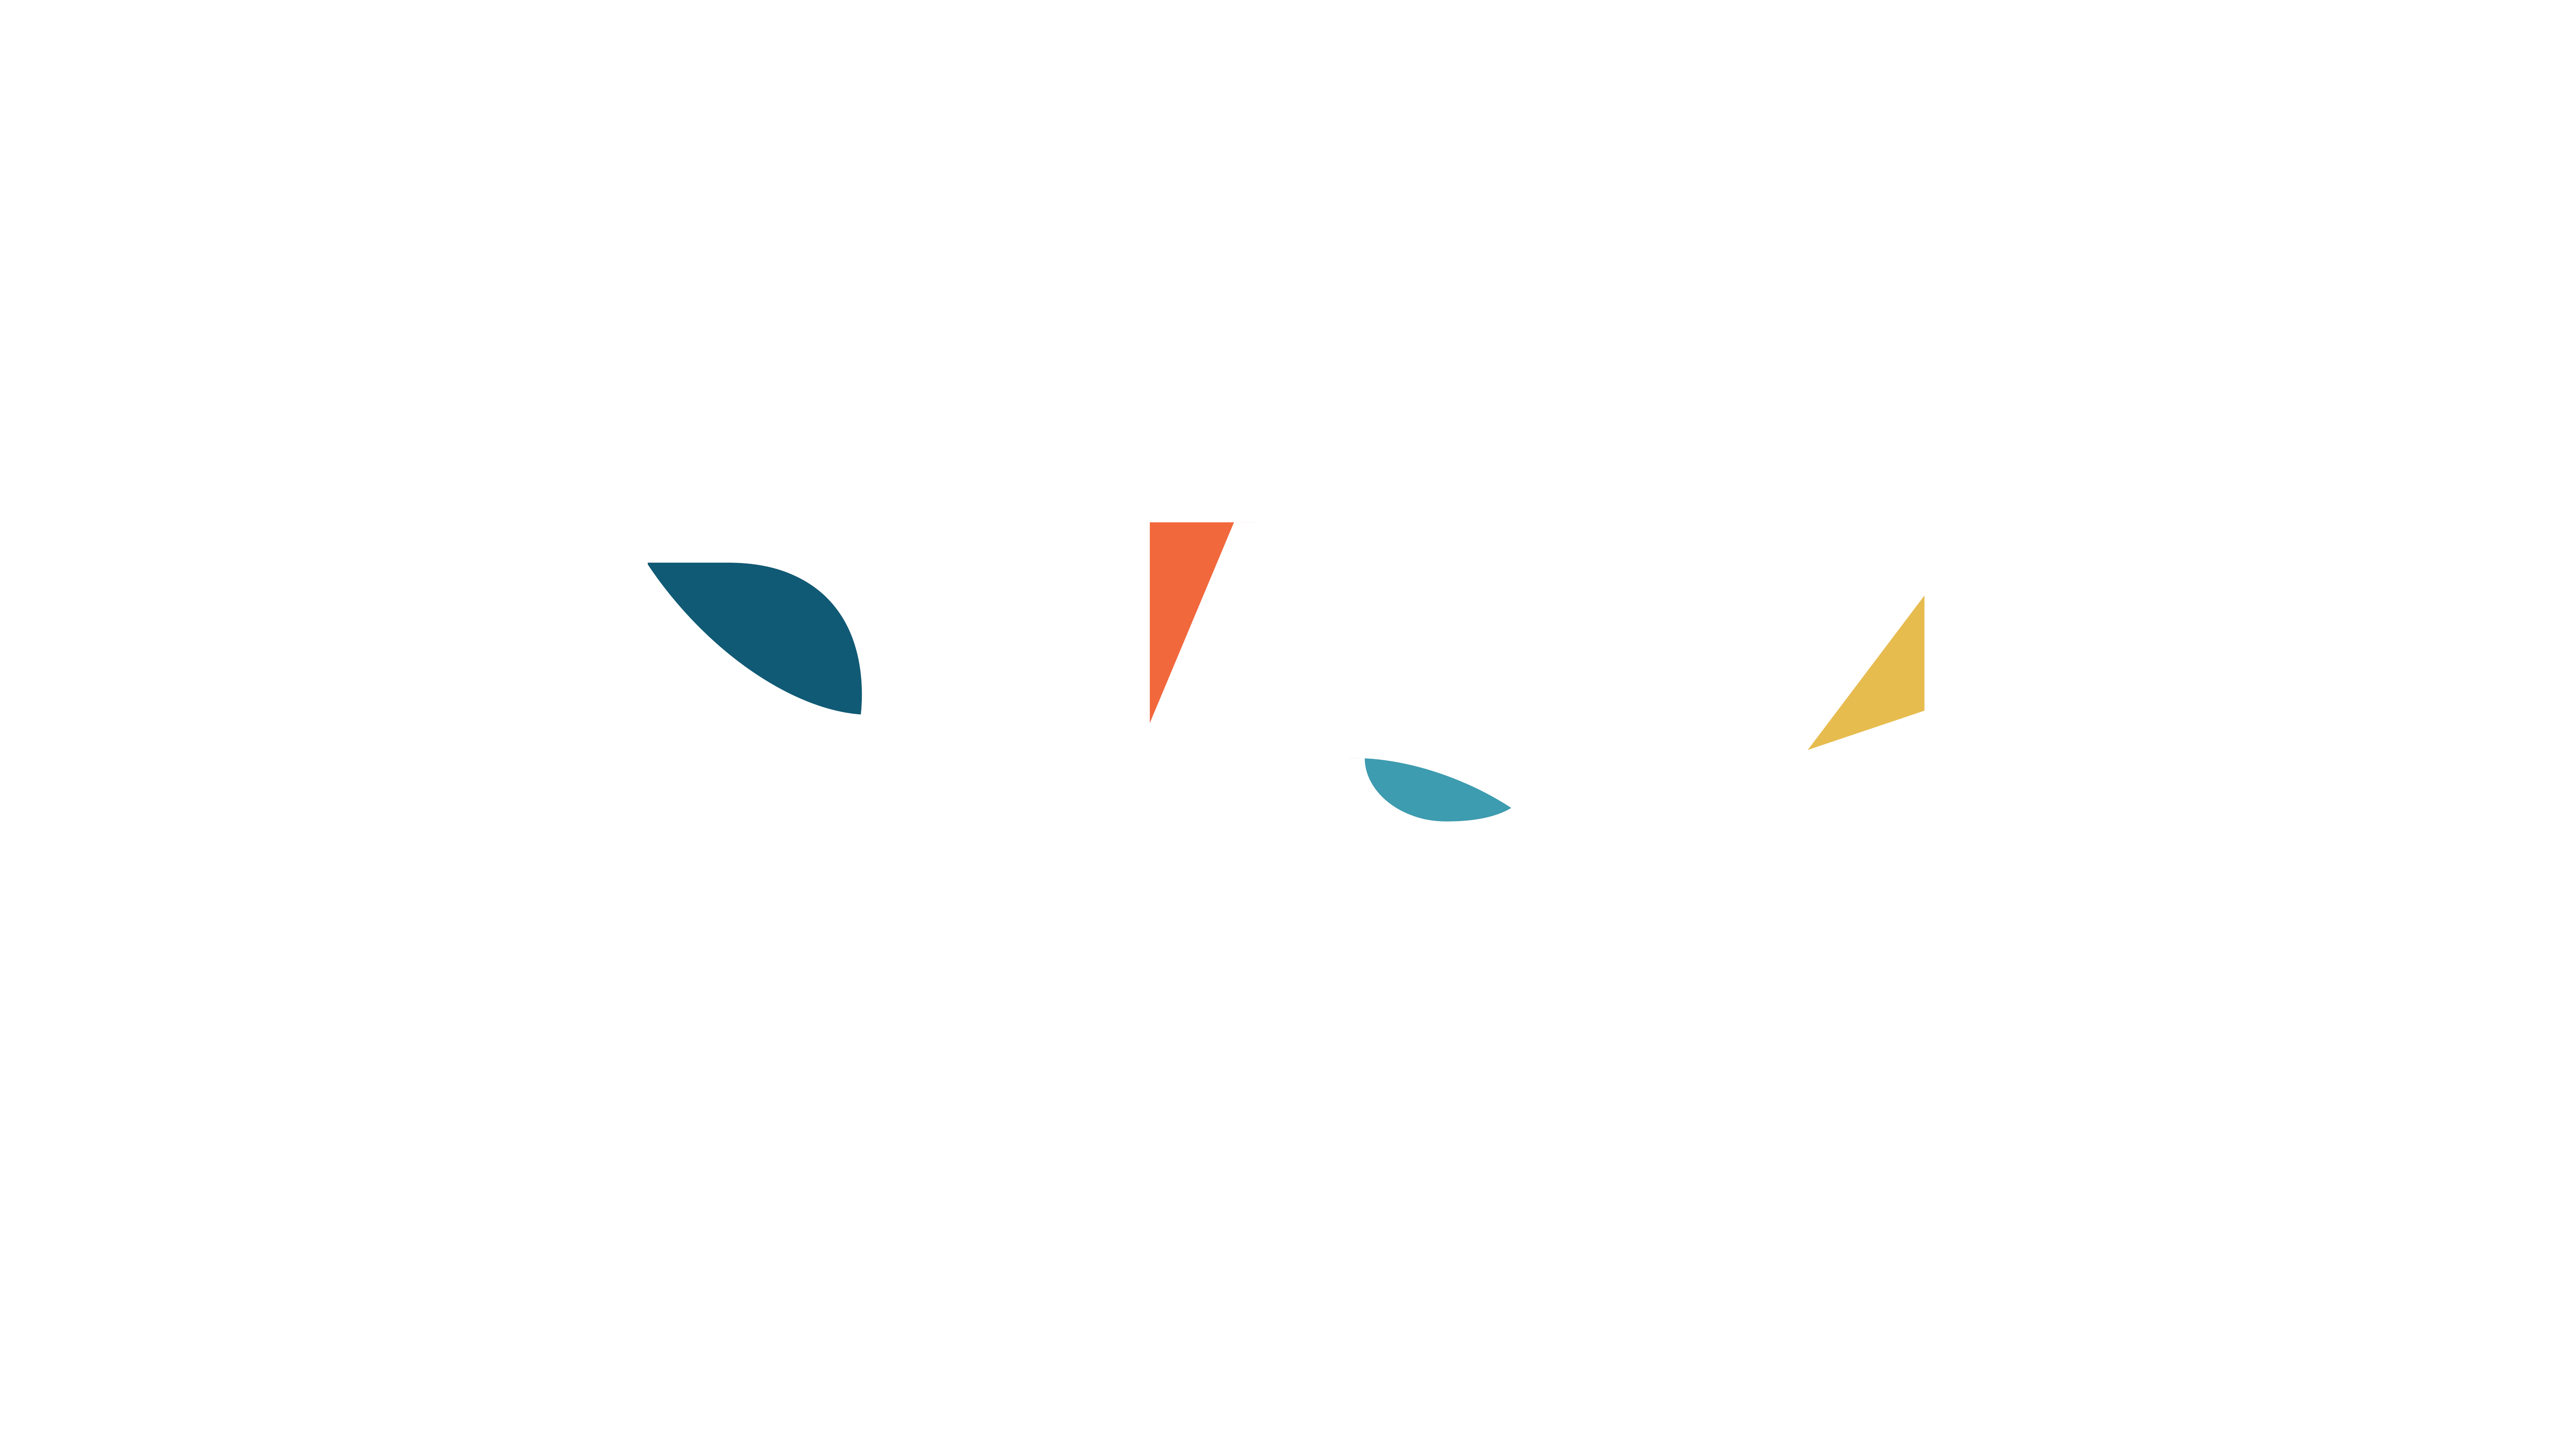 DVSM logo White